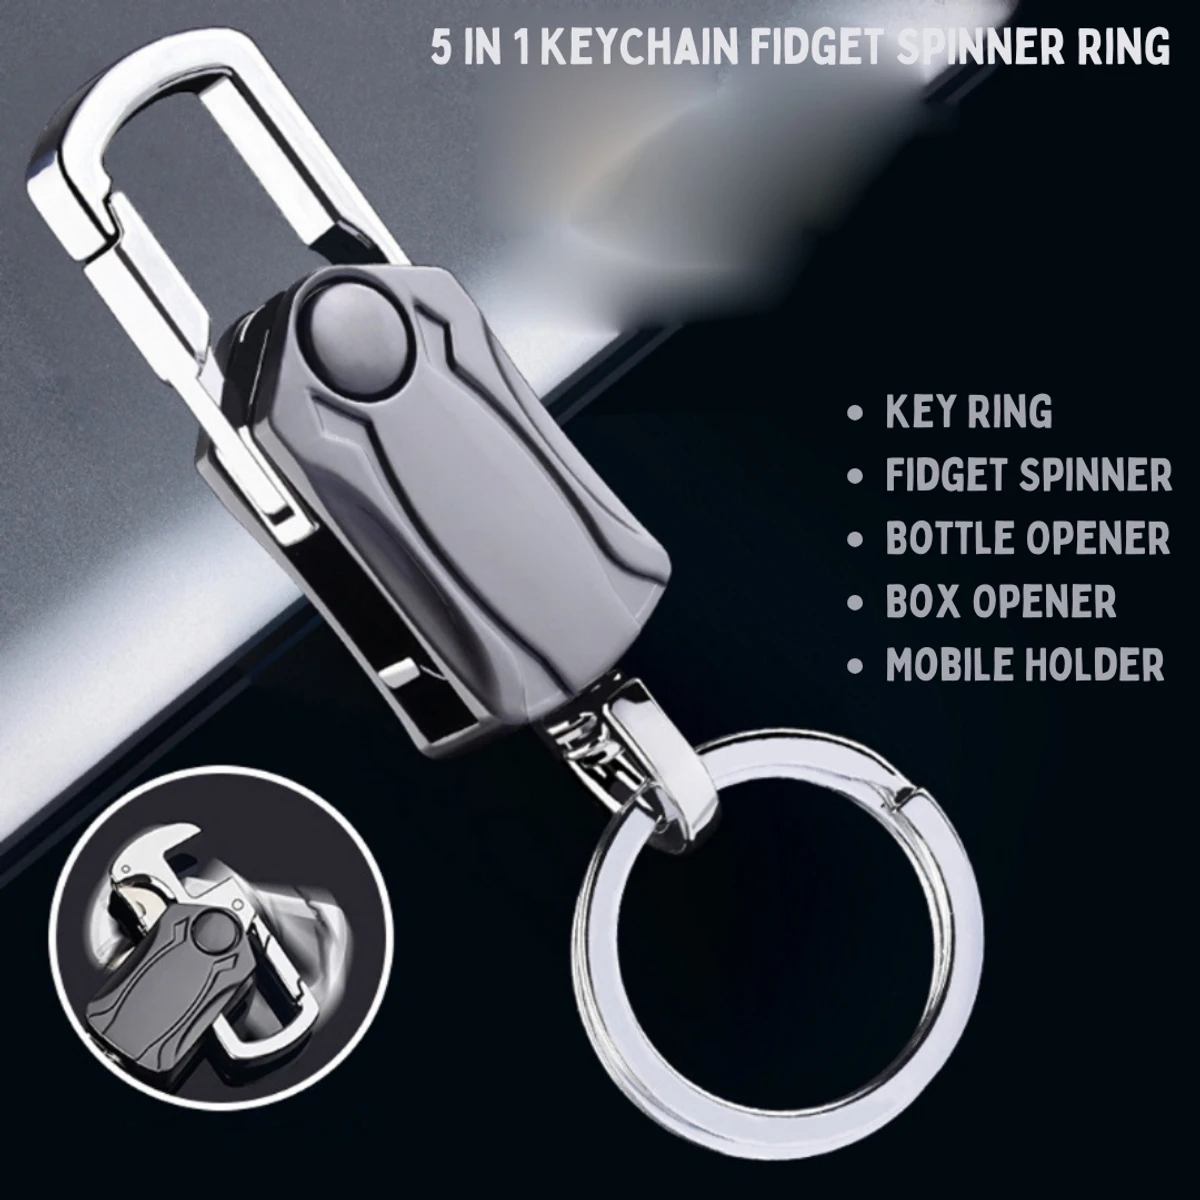 5-in-1 Key Chain Fidget Spinner Keyring